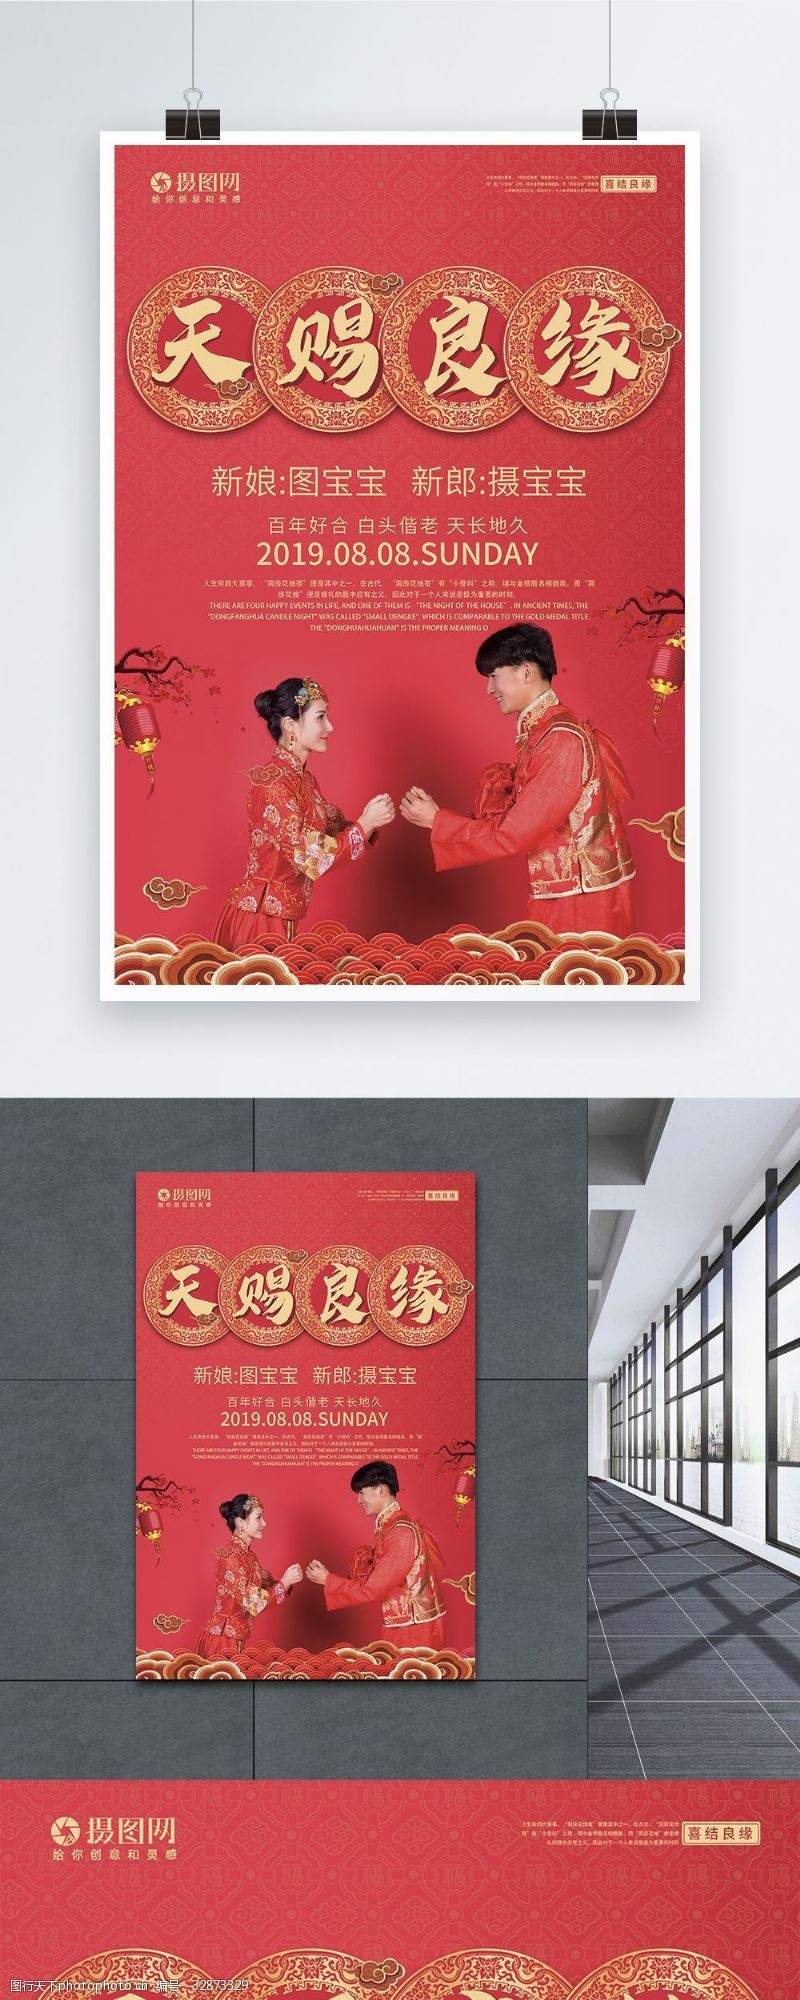 中式新娘天赐良缘中式婚礼海报